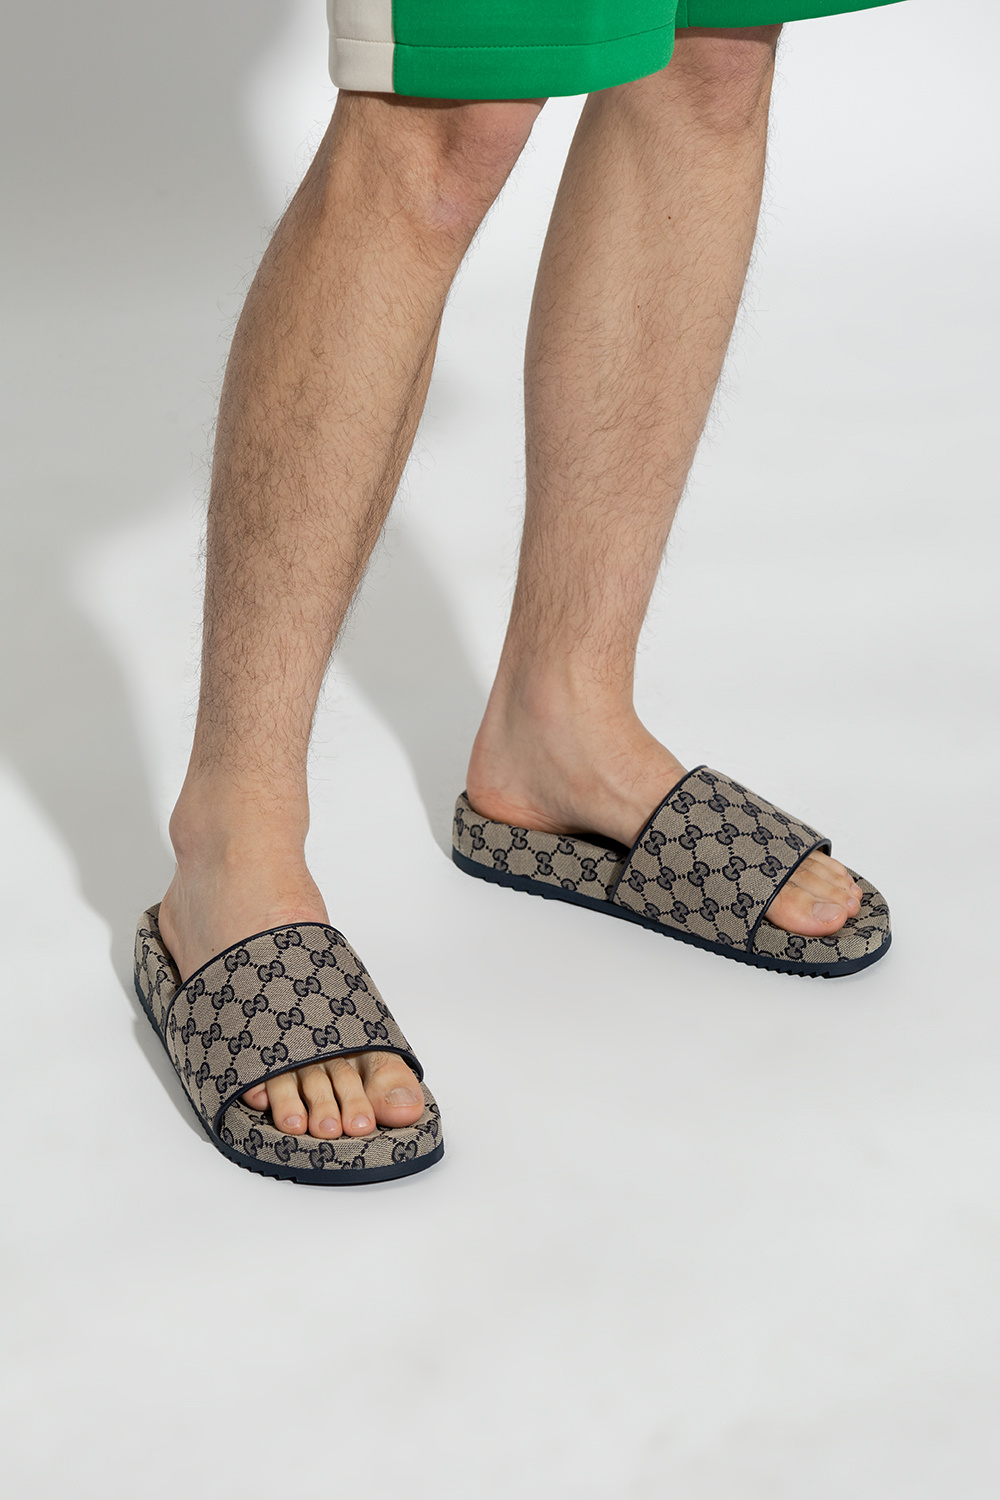 Gucci Beige GG Supreme Slide Sandals Size 41.5 Gucci